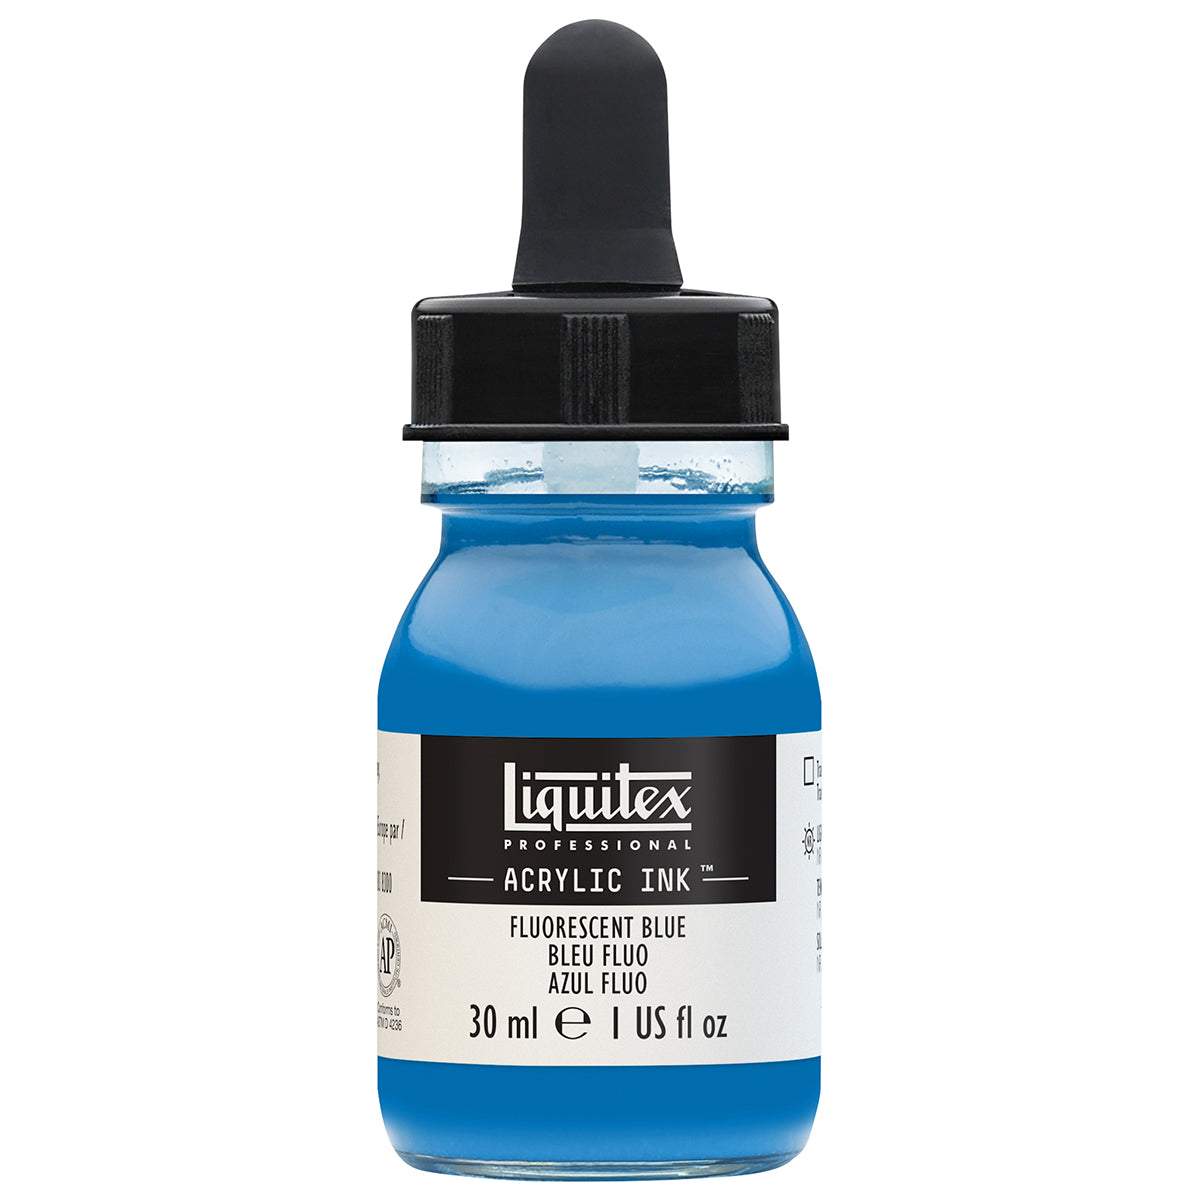 Liquitex-inchiostro acrilico-30ml blu fluorescente